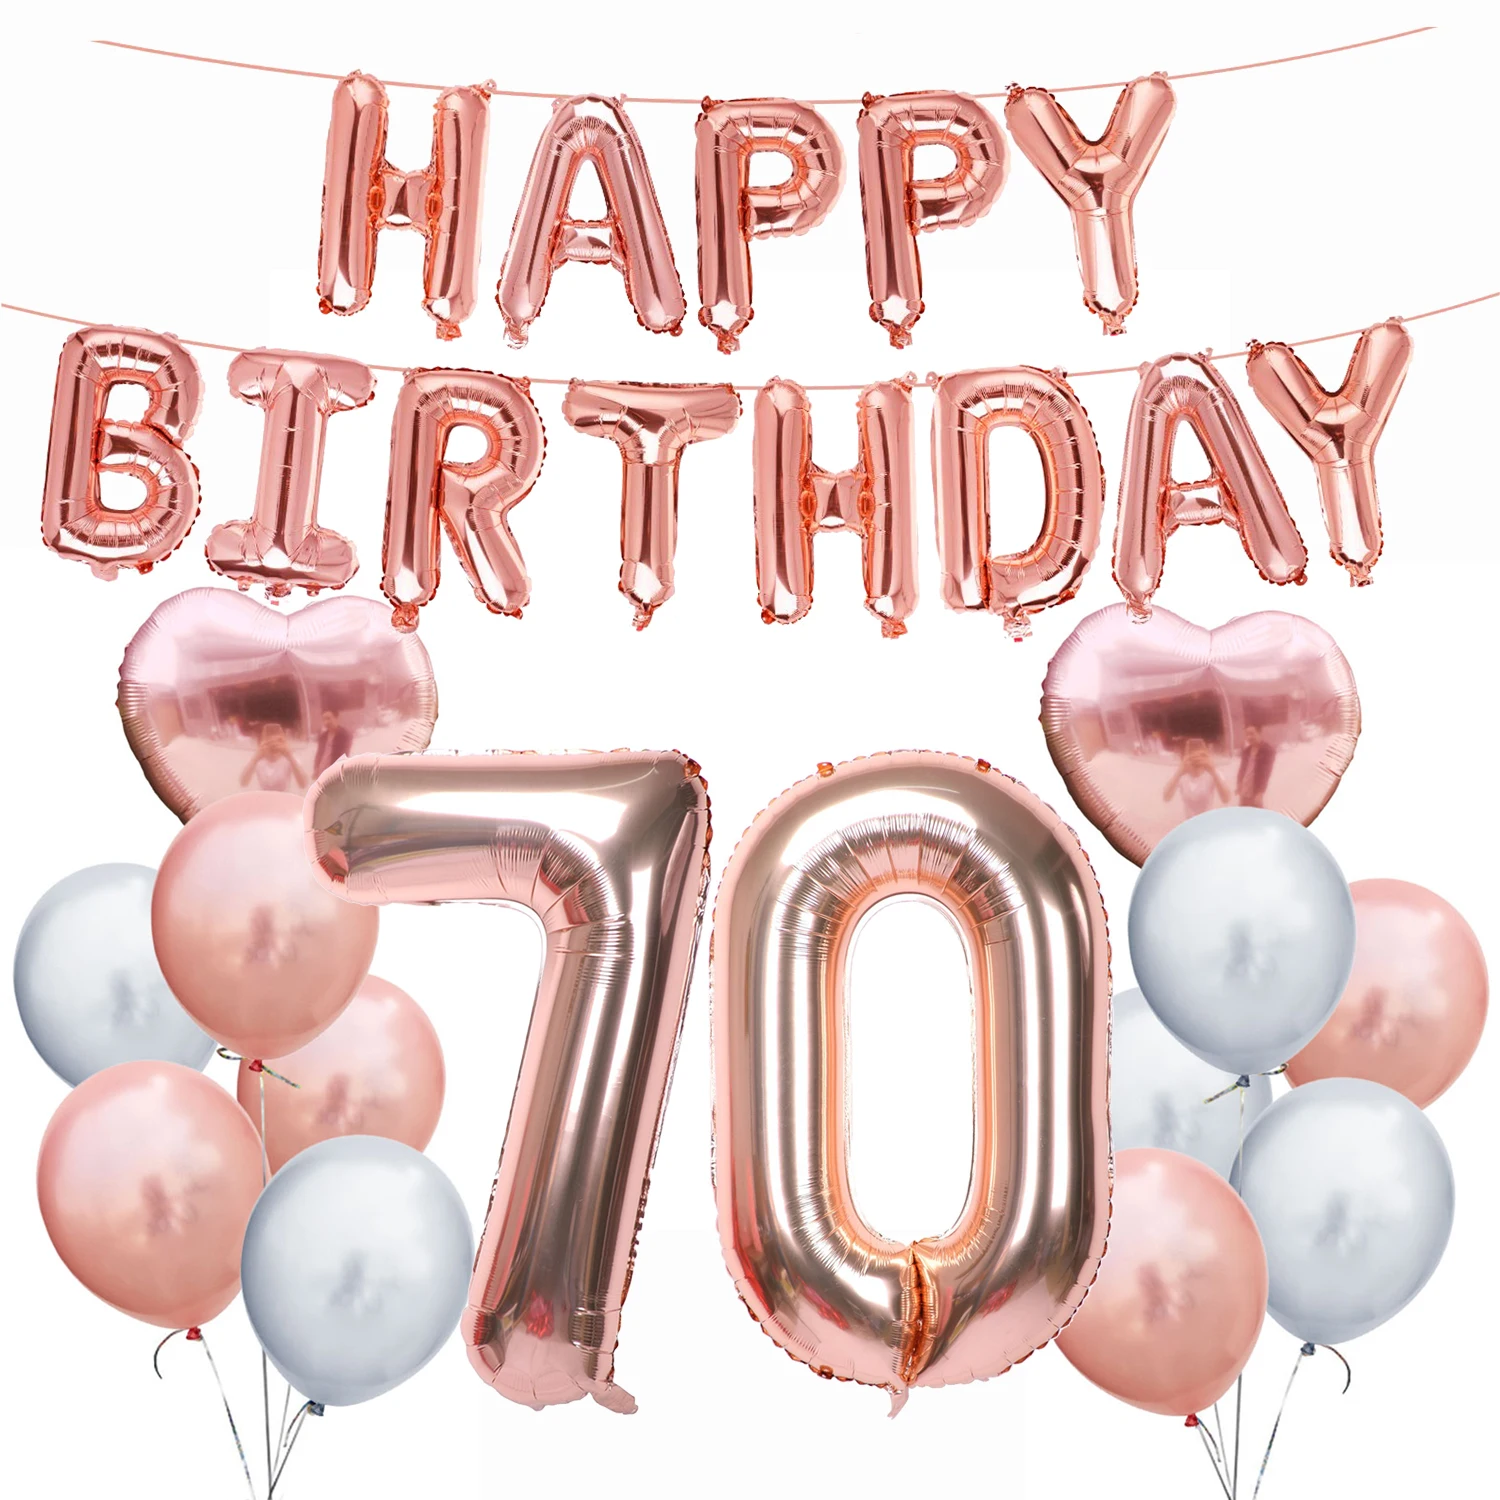 Amawill 70th День рождения украшения для взрослых из розового золота с днем рождения Фольга шар 70 лет принадлежности для юбилейной вечеринки 75D - Цвет: No.2